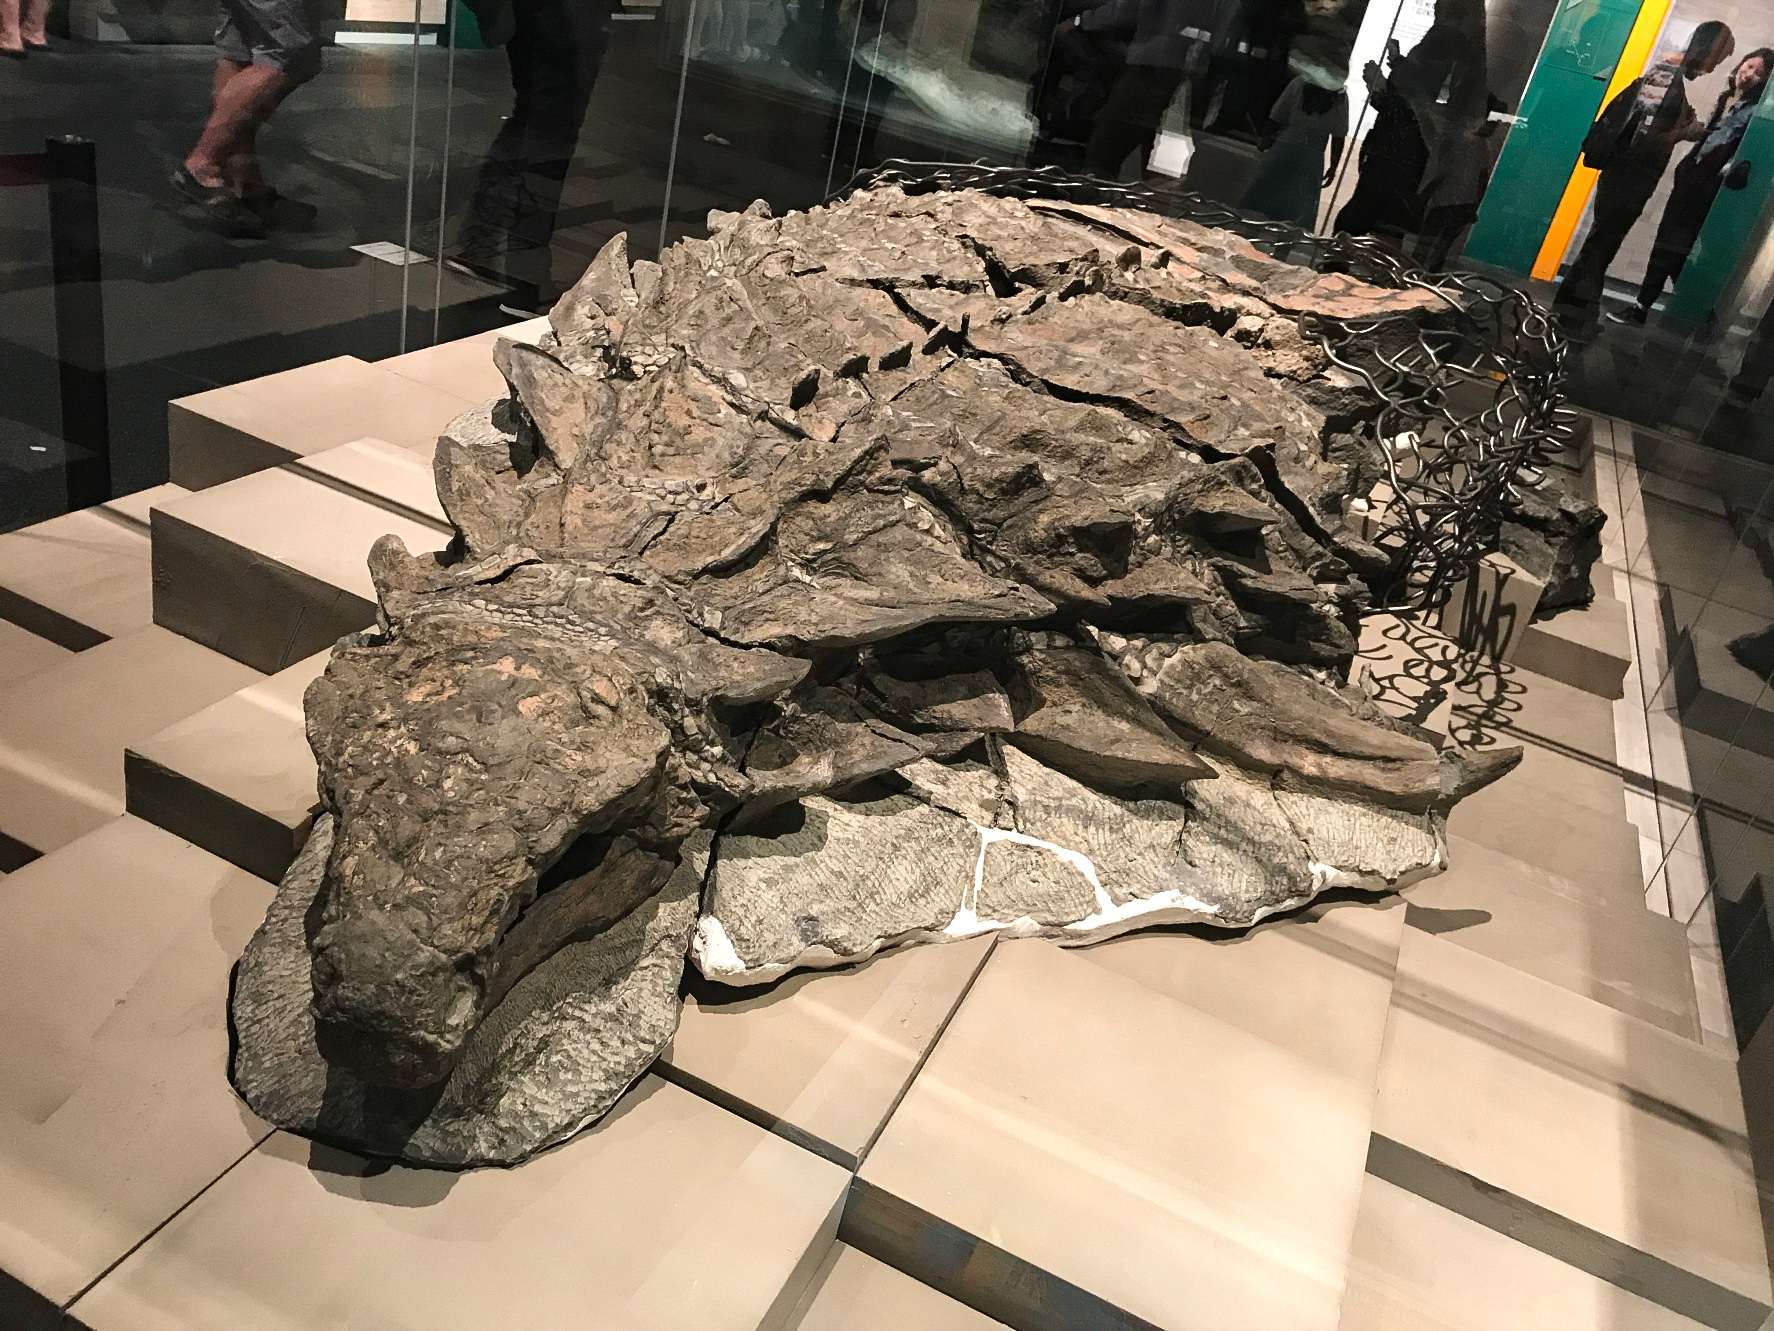 Borealopelta (იგულისხმება "ჩრდილოეთის ფარი") არის ნოდოზაური ანკილოზავრების გვარი ალბერტას ადრეული ცარცული პერიოდიდან, კანადა. ის შეიცავს ერთ სახეობას, B. markmitchelli-ს, რომელსაც 2017 წელს დაარქვა კალებ ბრაუნმა და კოლეგებმა კარგად შემონახული ნიმუშიდან, რომელიც ცნობილია როგორც Suncor nodosaur.